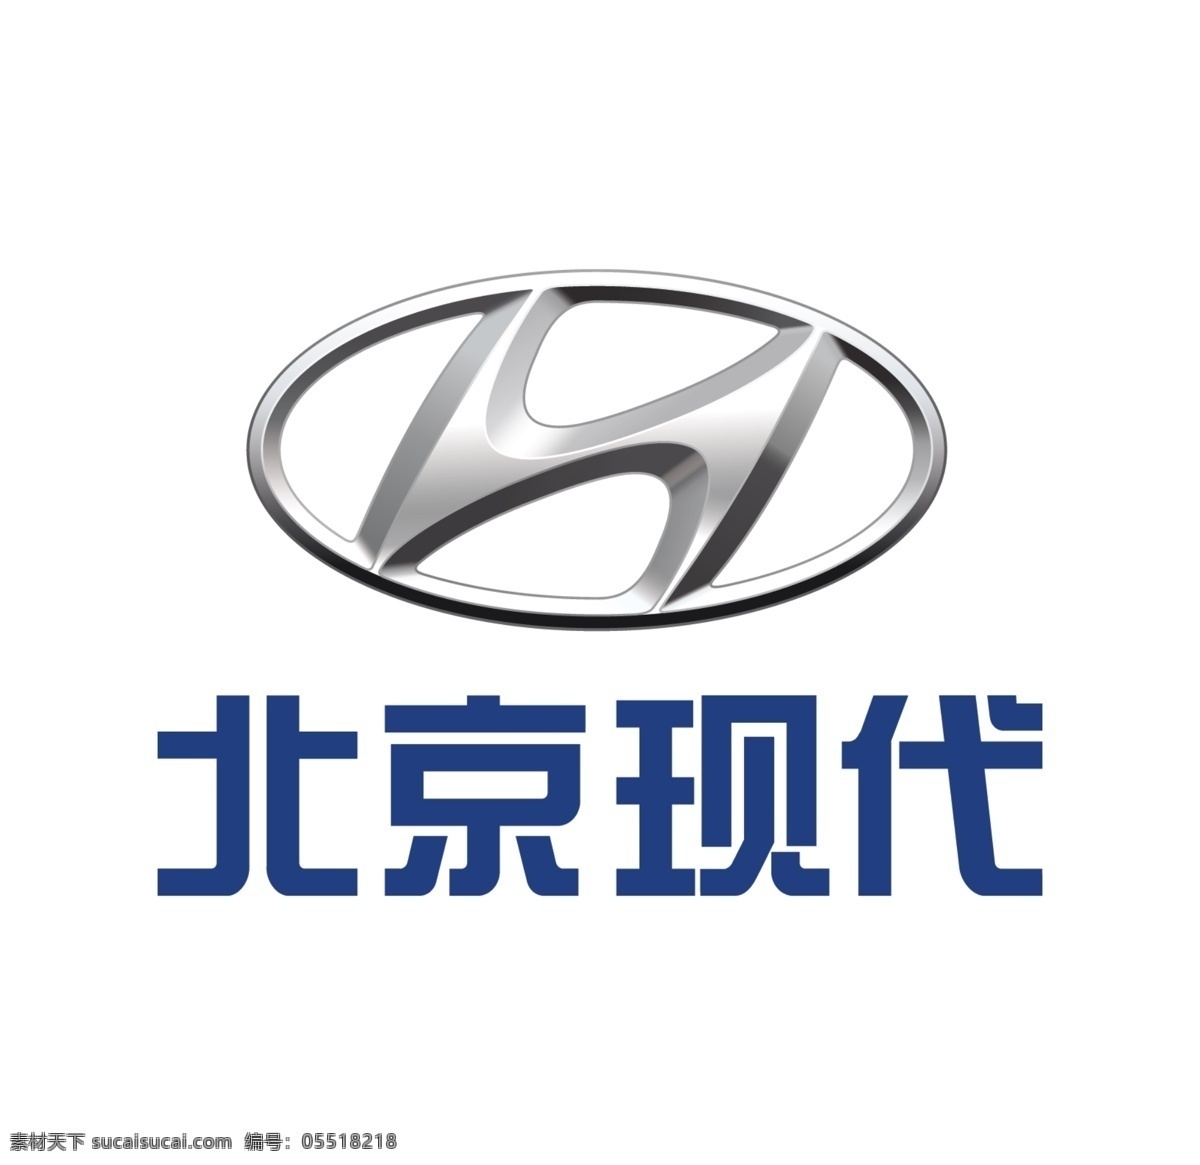 北京现代标志 北京现代 logo 北京现代图标 北京现代商标 北京现代汽车